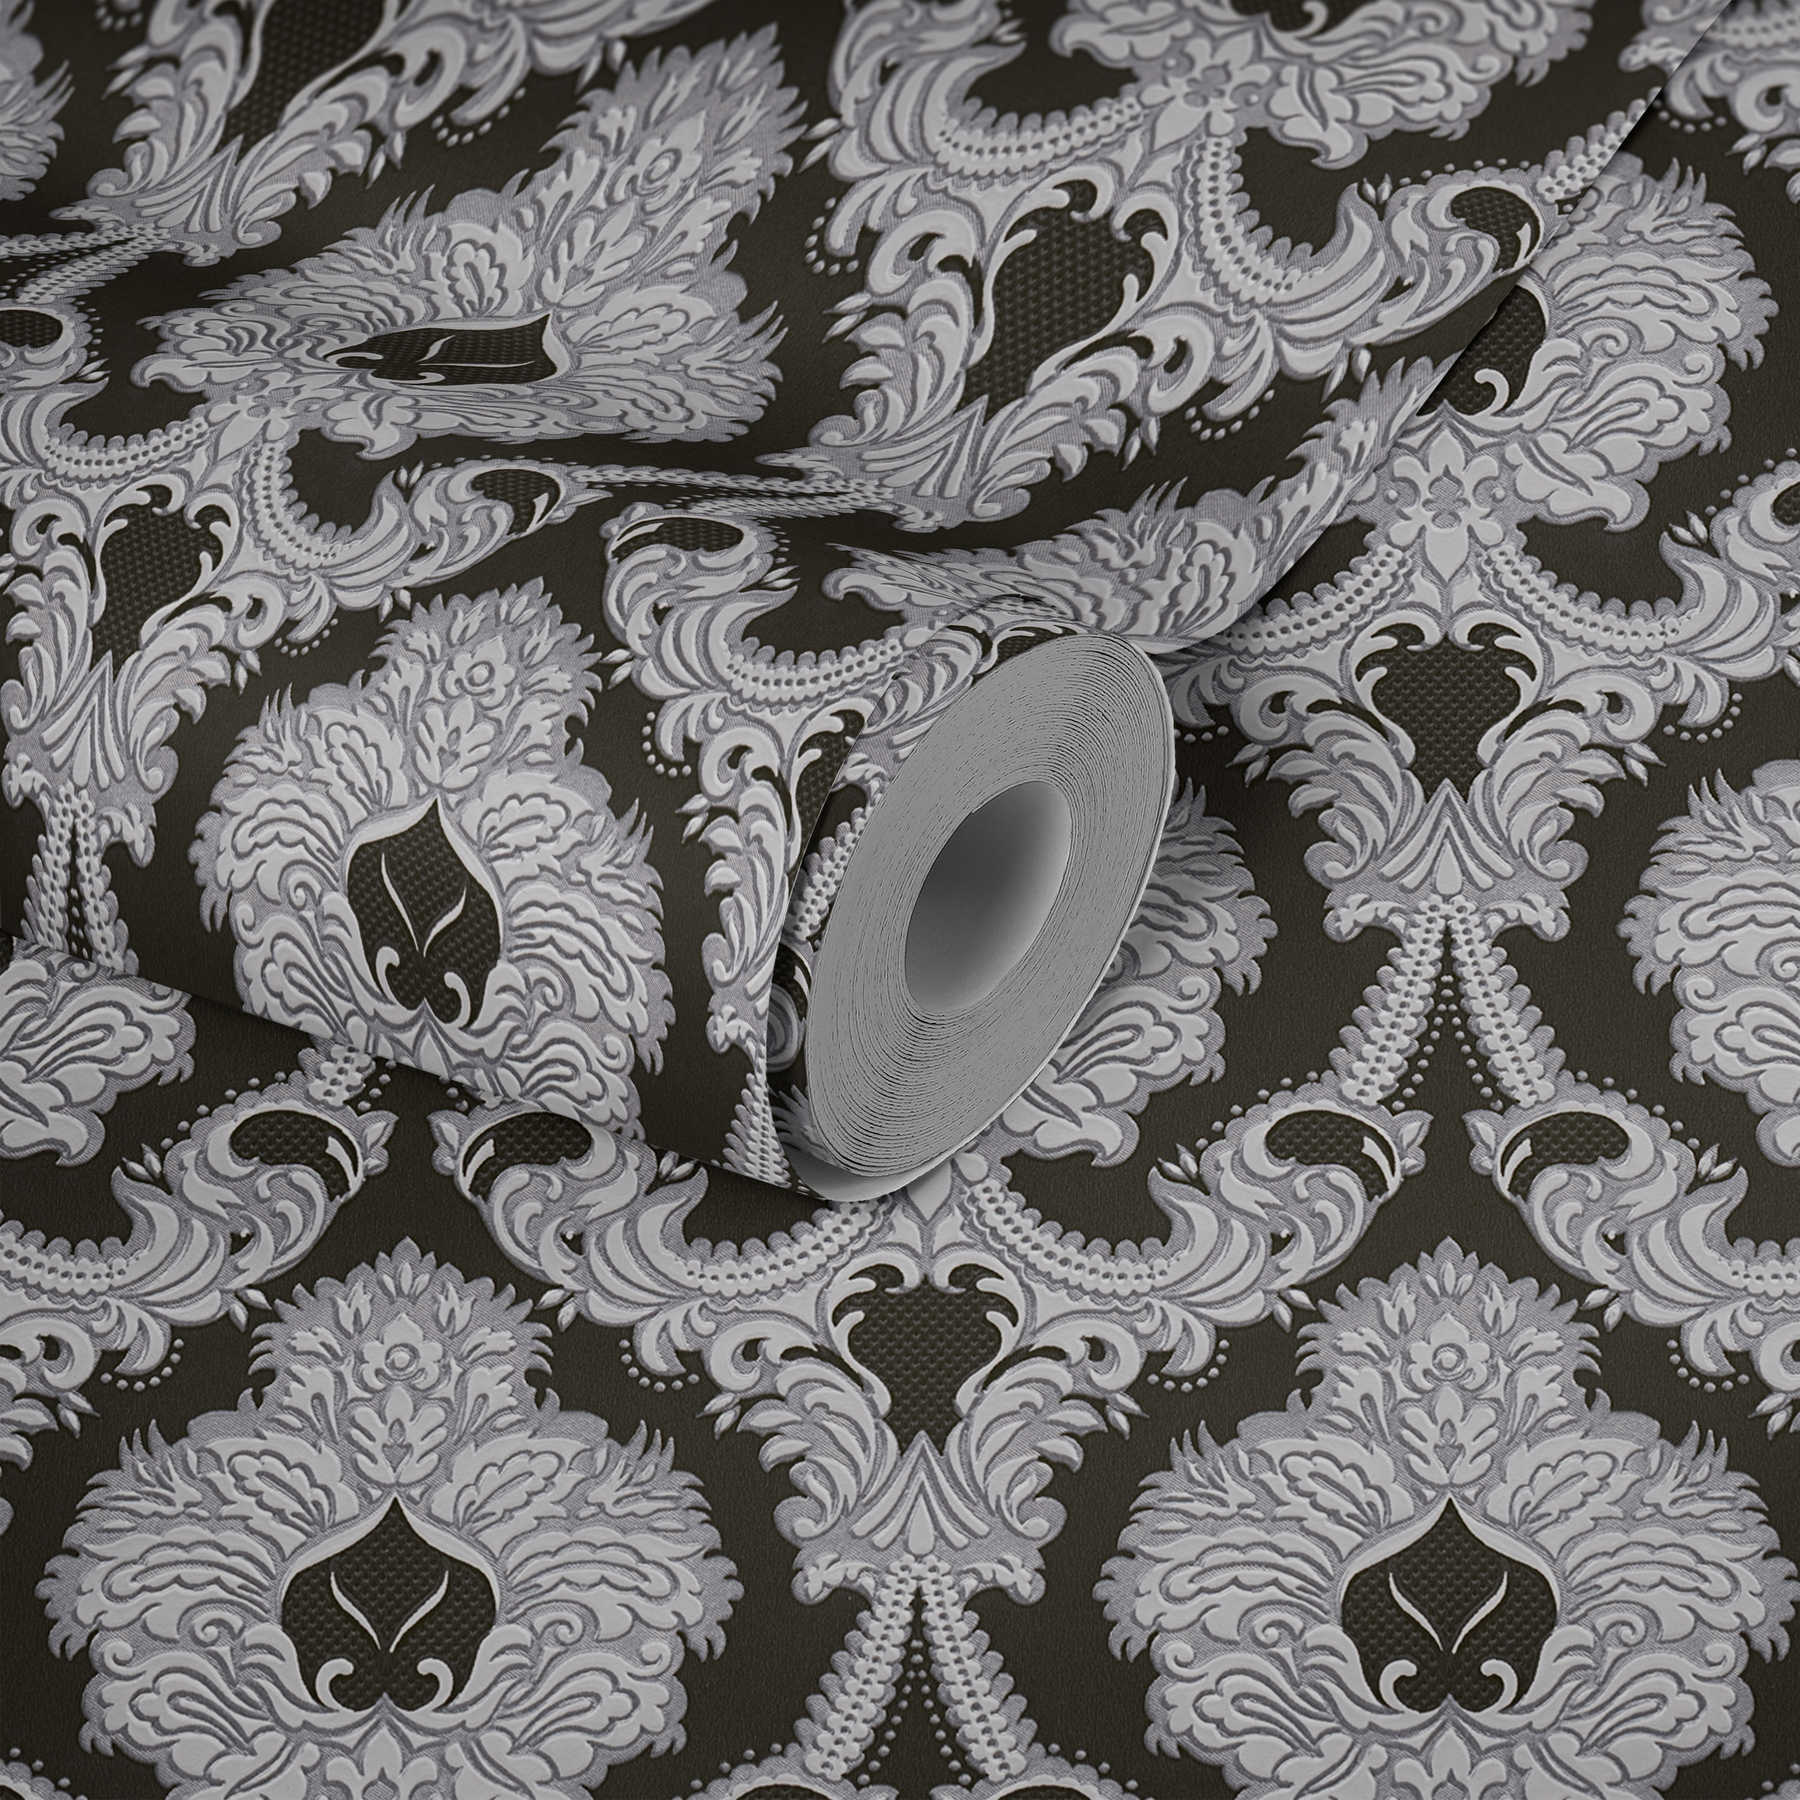             Papel pintado con adornos opulentos, acentos plateados - plata, negro, blanco
        